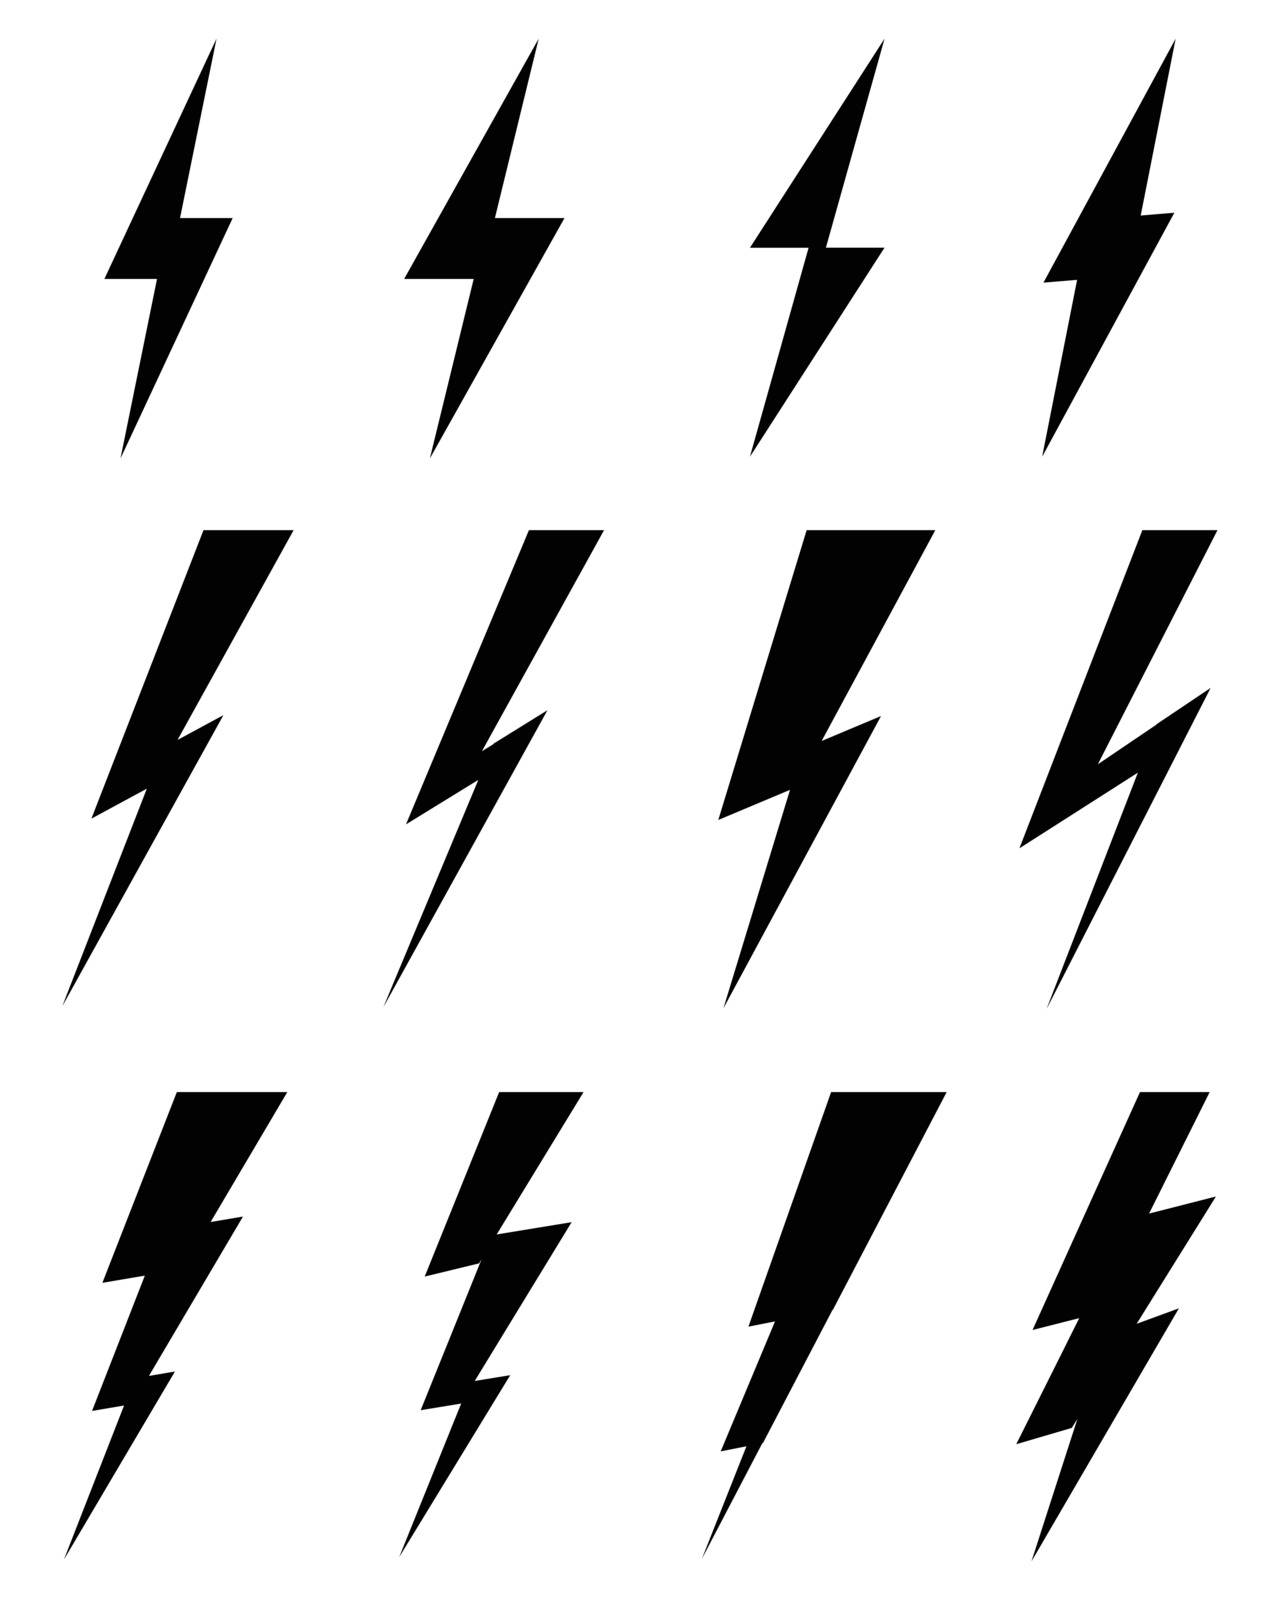 icons of thunder lighting by ratkomat